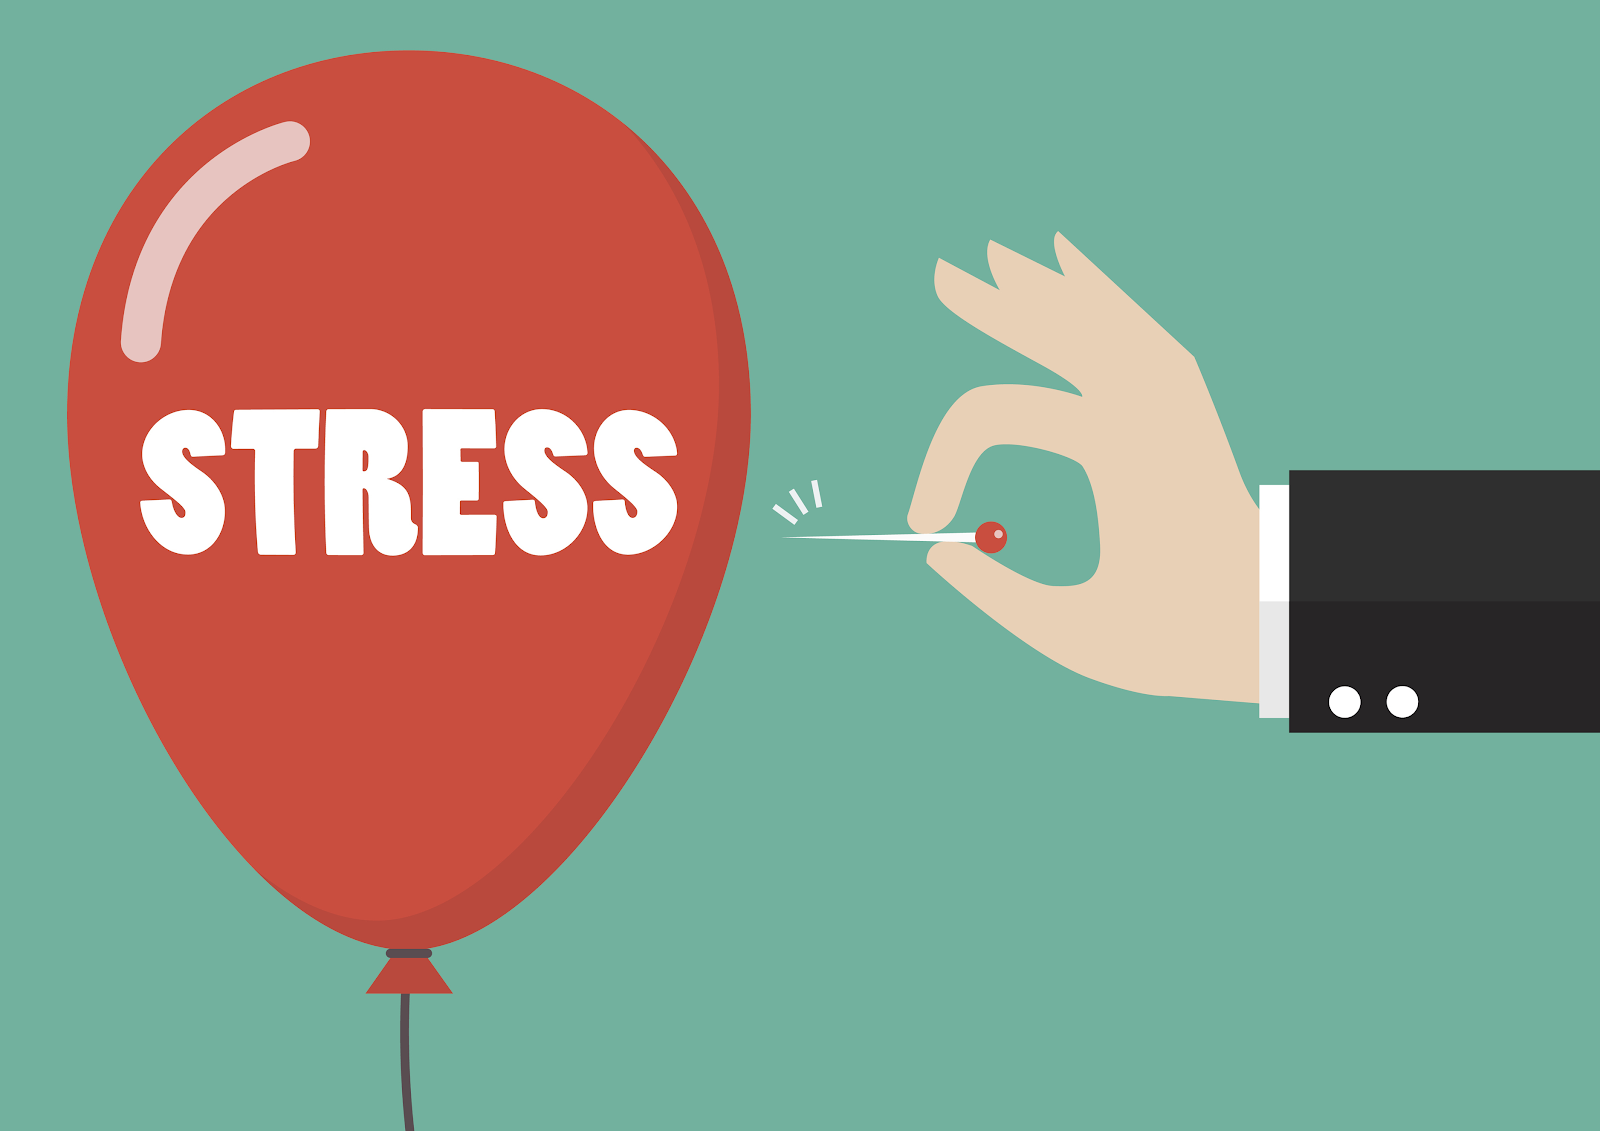 Có những cách nào để giảm căng thẳng trong cuộc sống hằng ngày?
